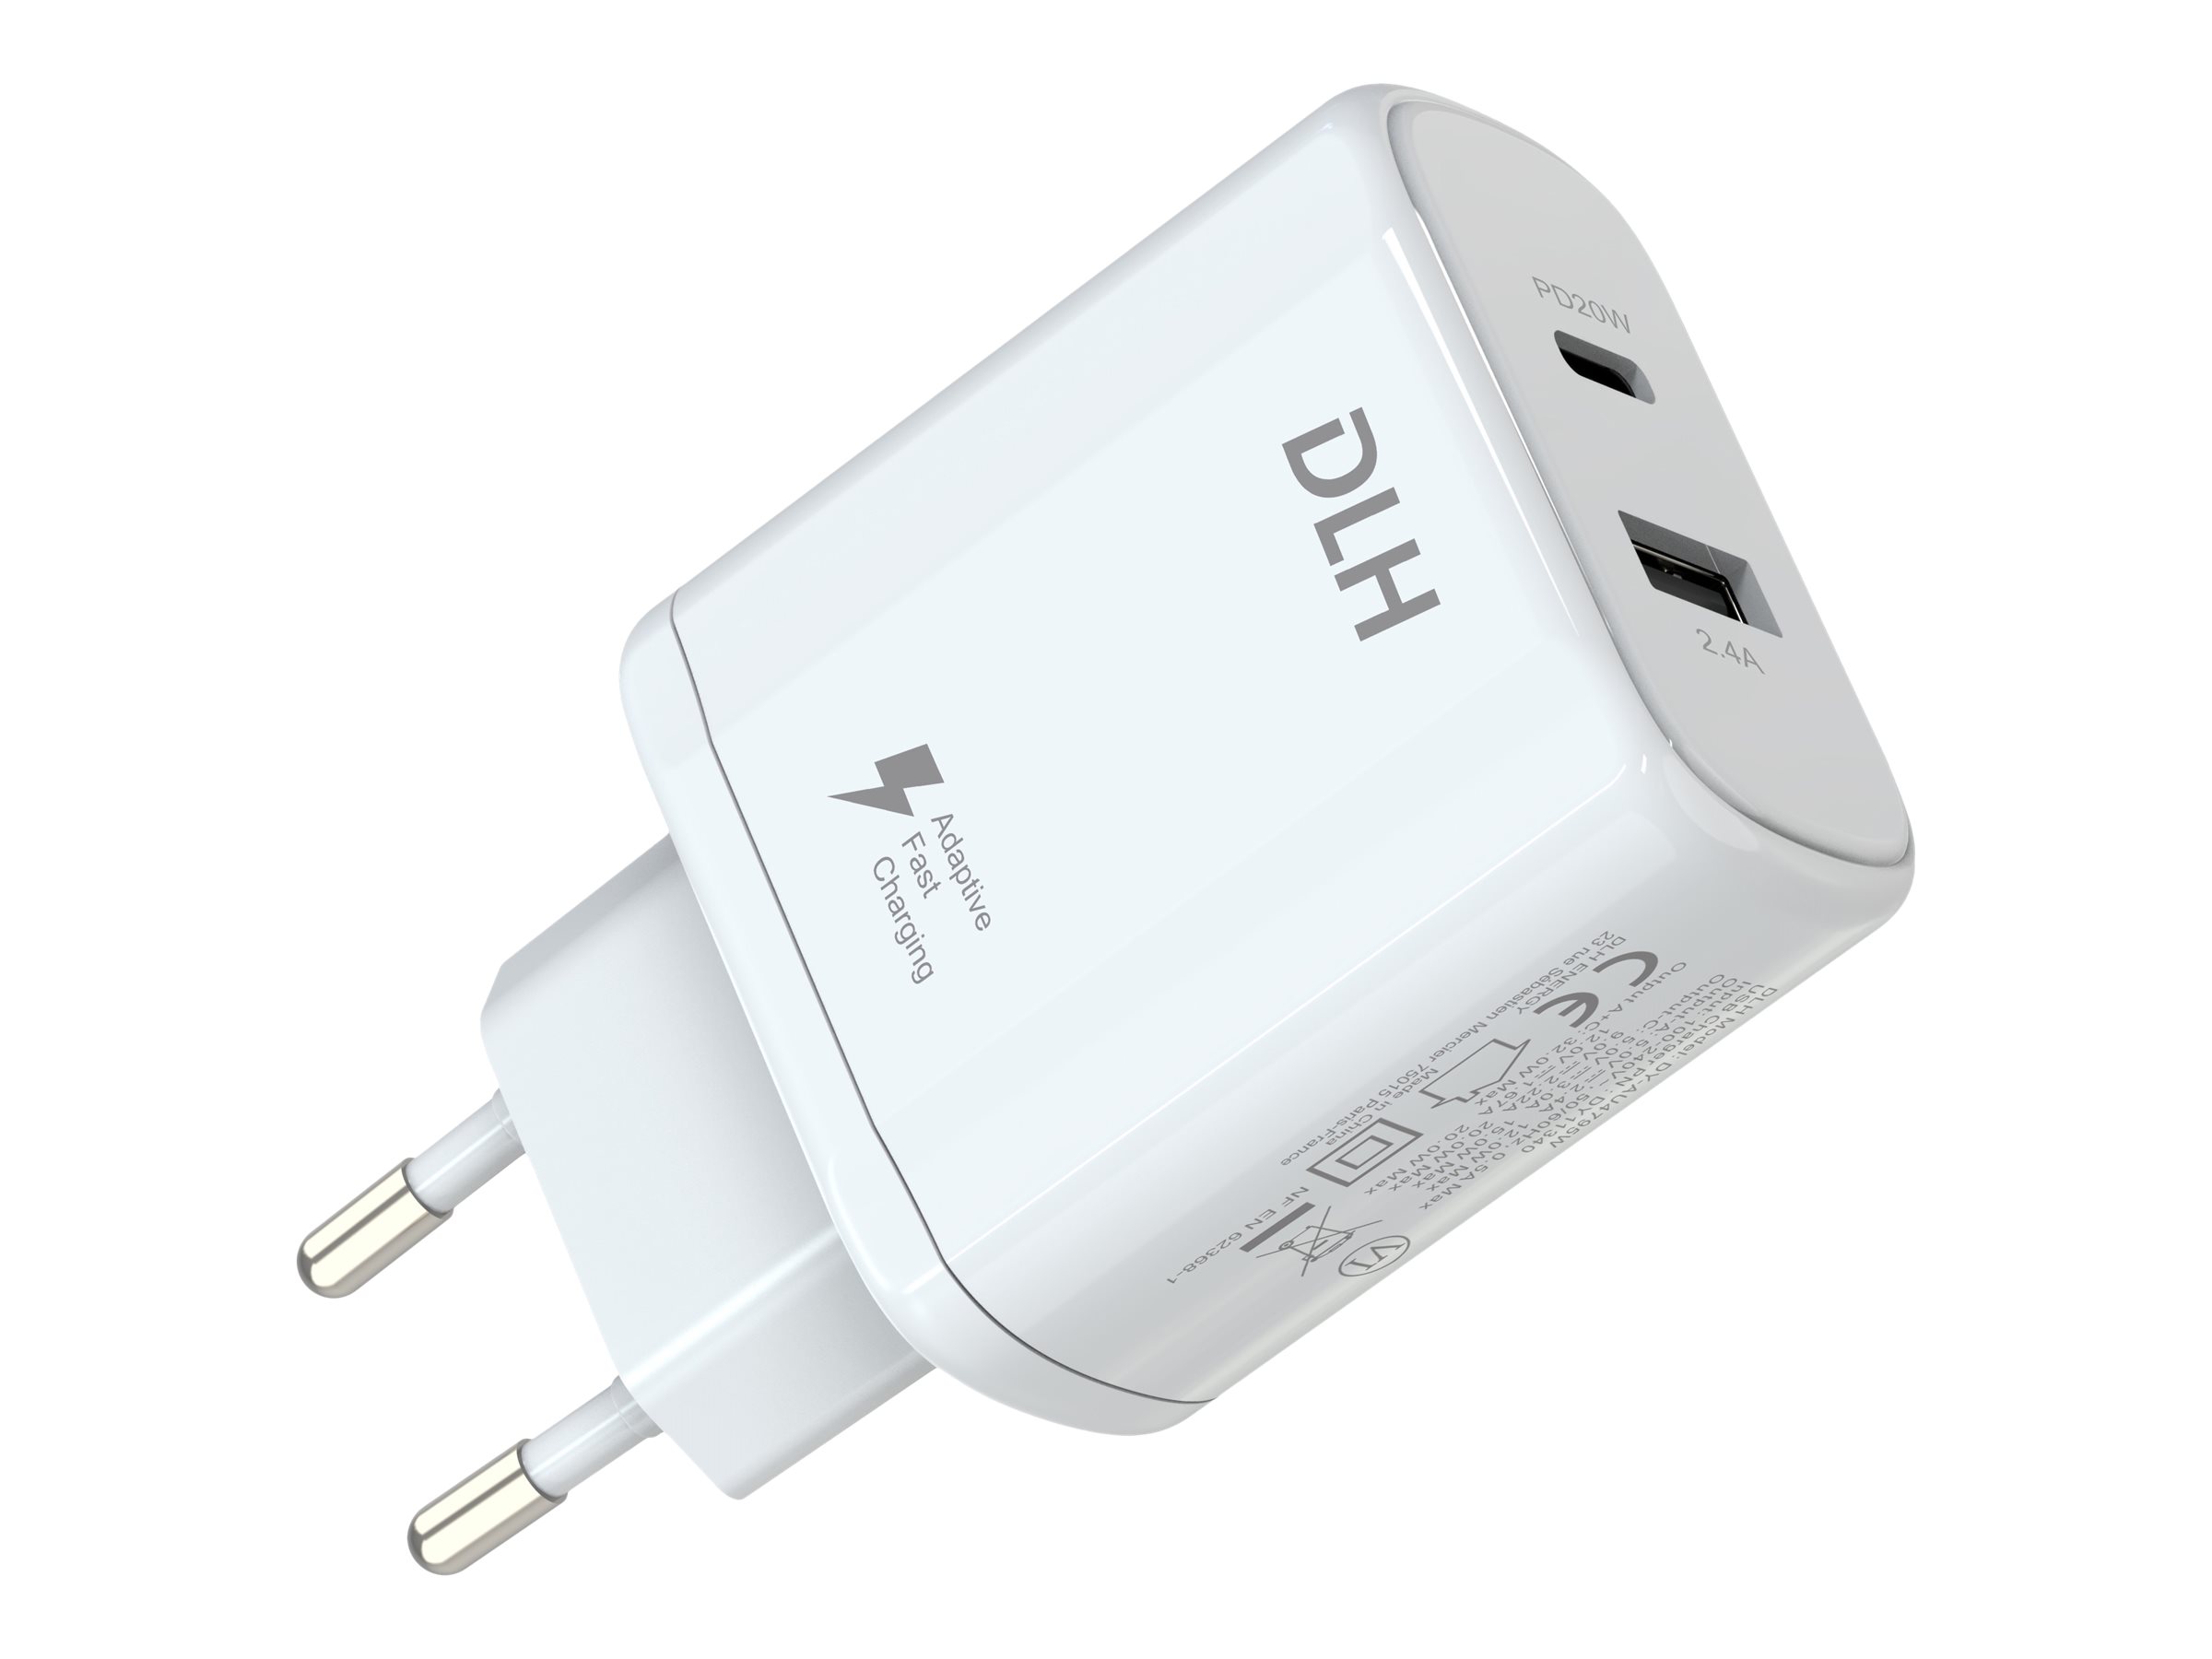 DLH - Adaptateur secteur - 32 Watt - 3 A - PD - 2 connecteurs de sortie (USB, 24 pin USB-C) - blanc - DY-AU4795W - Batteries et adaptateurs d'alimentation pour téléphone cellulaire